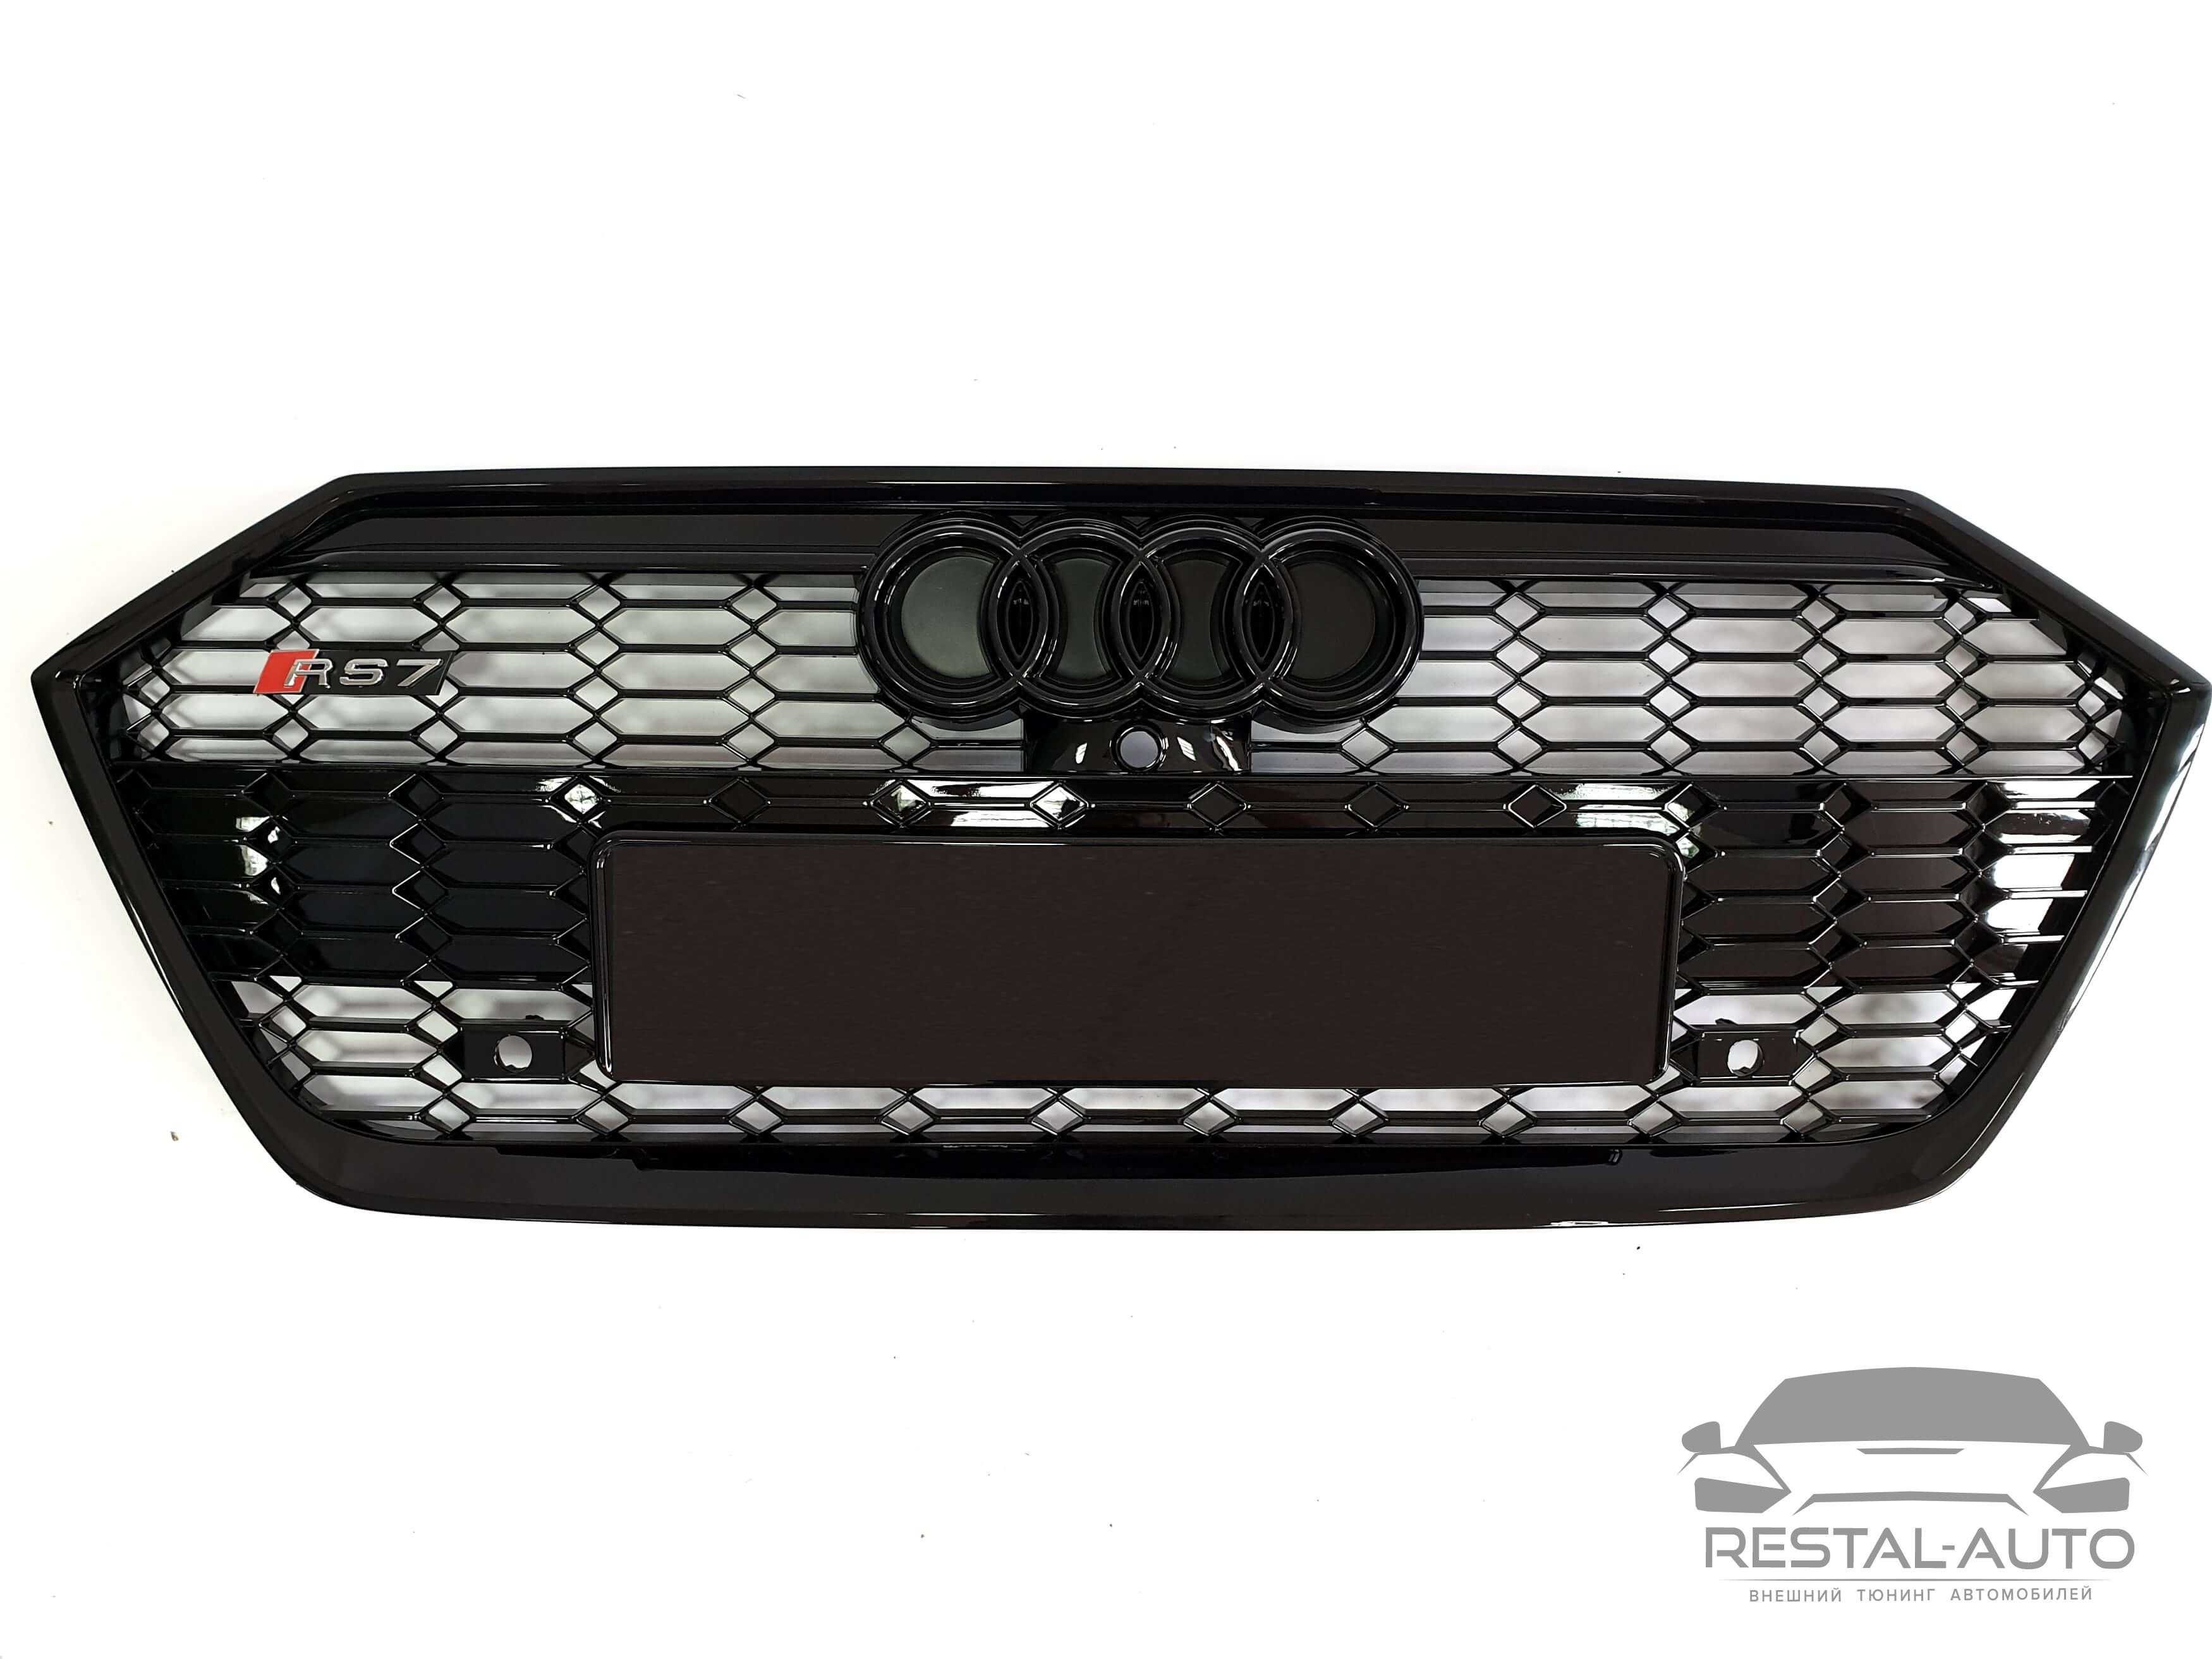 решетка радиатора в стиле RS на Audi A7 C8 ( 4K ) 2017-2021г ауди RS7